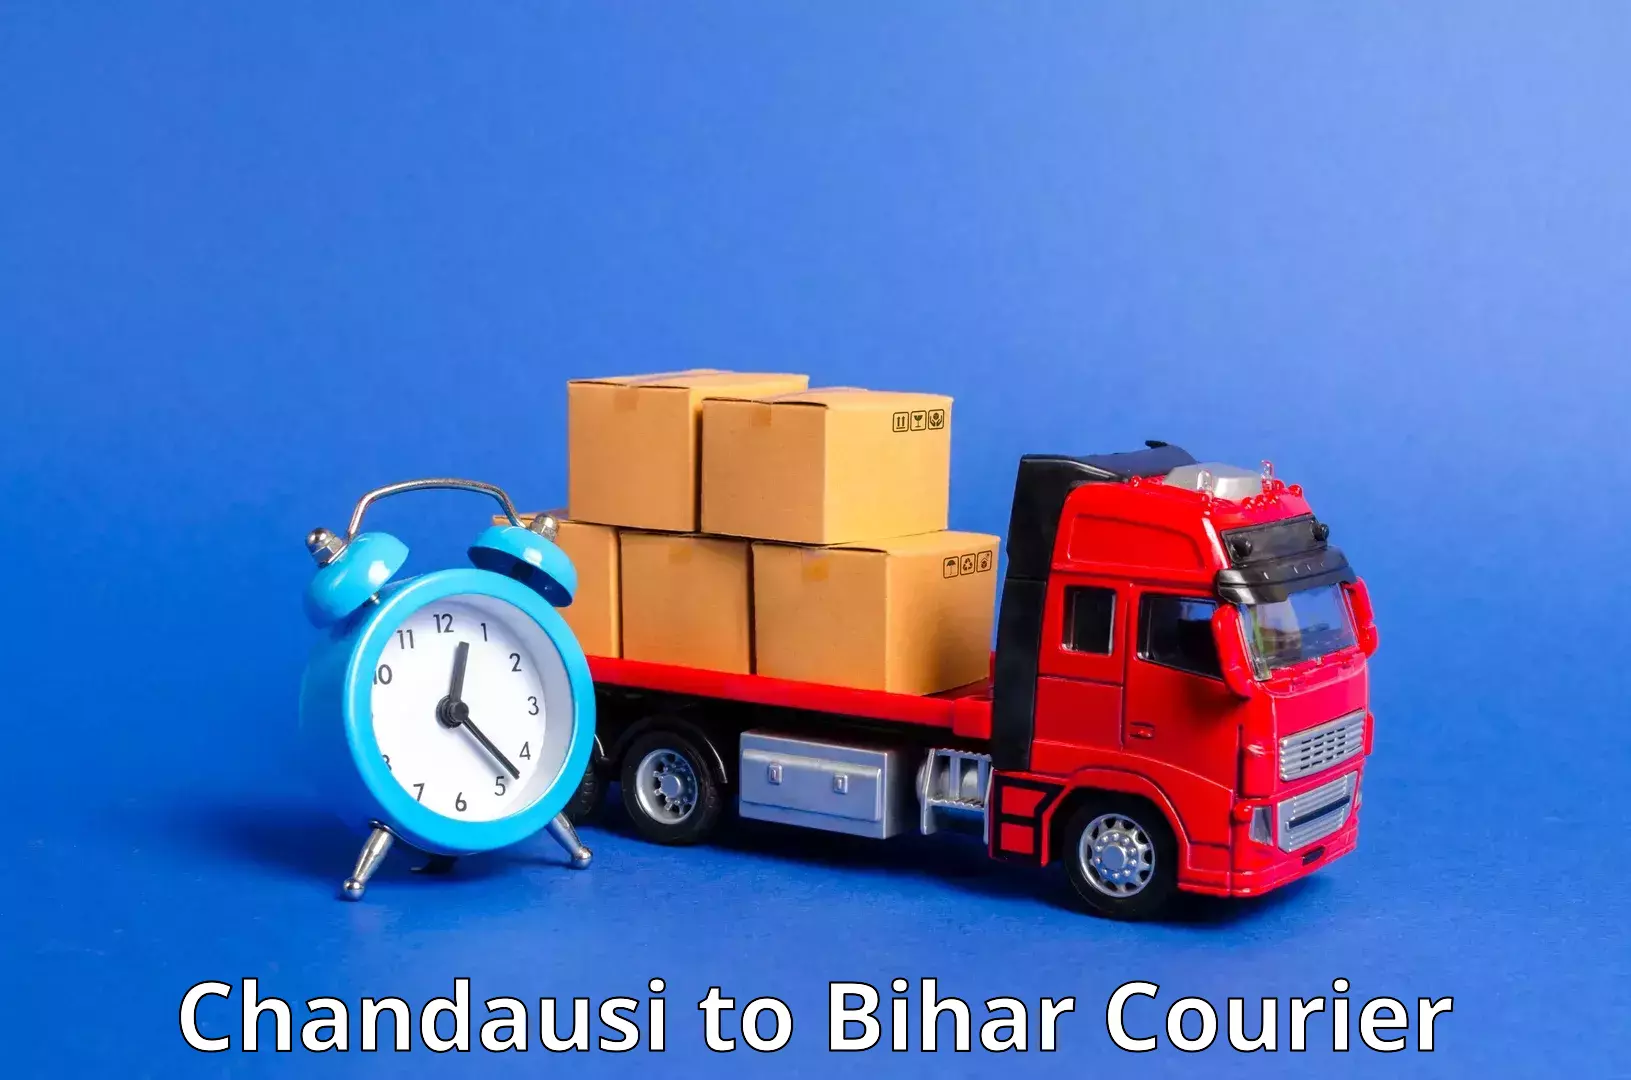 Doorstep delivery service Chandausi to Bihta